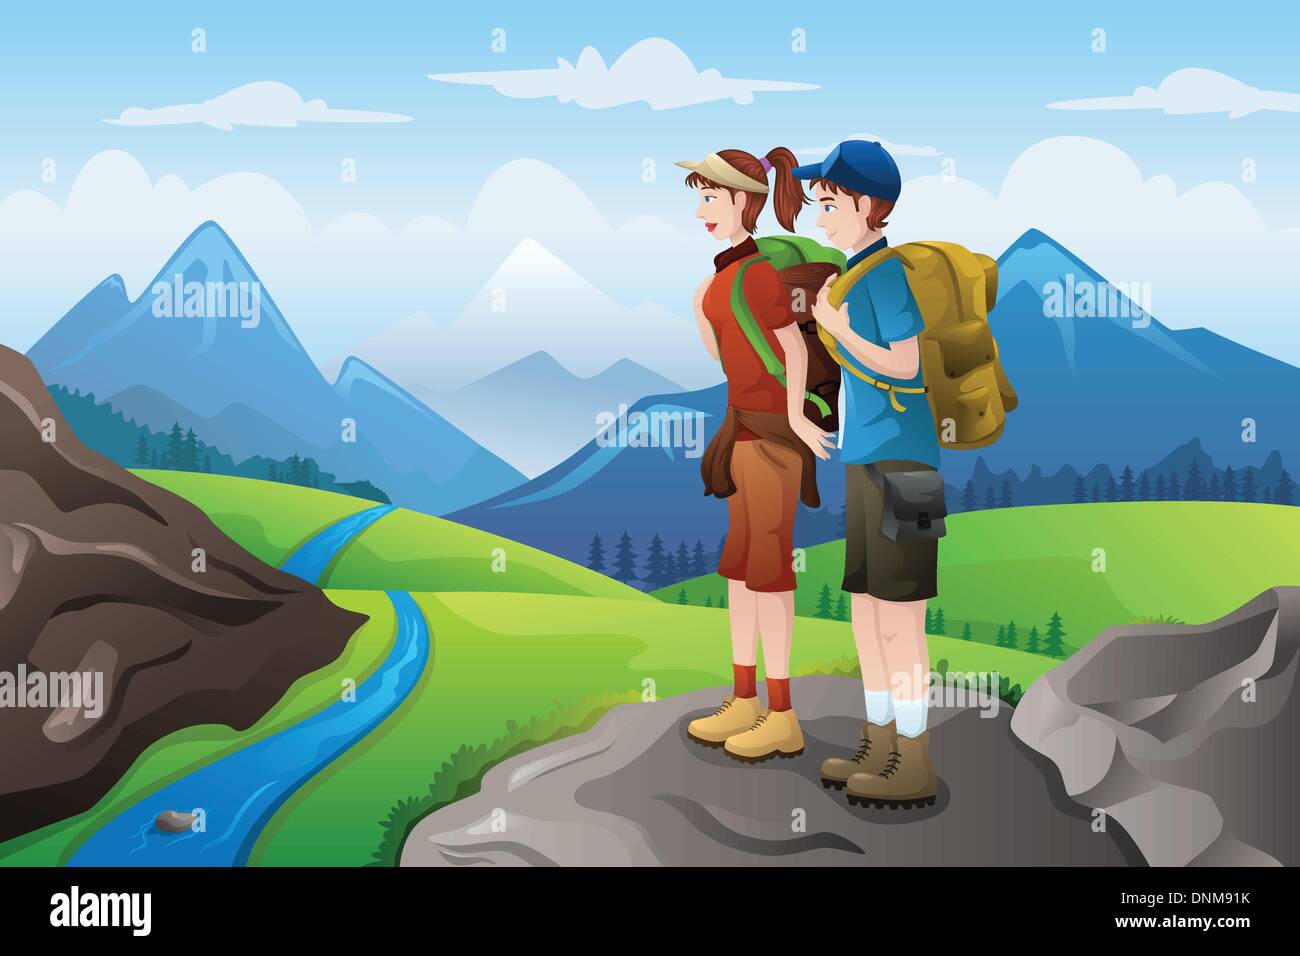 Un vecteur illustration de couple de backpackers on top of mountain Illustration de Vecteur